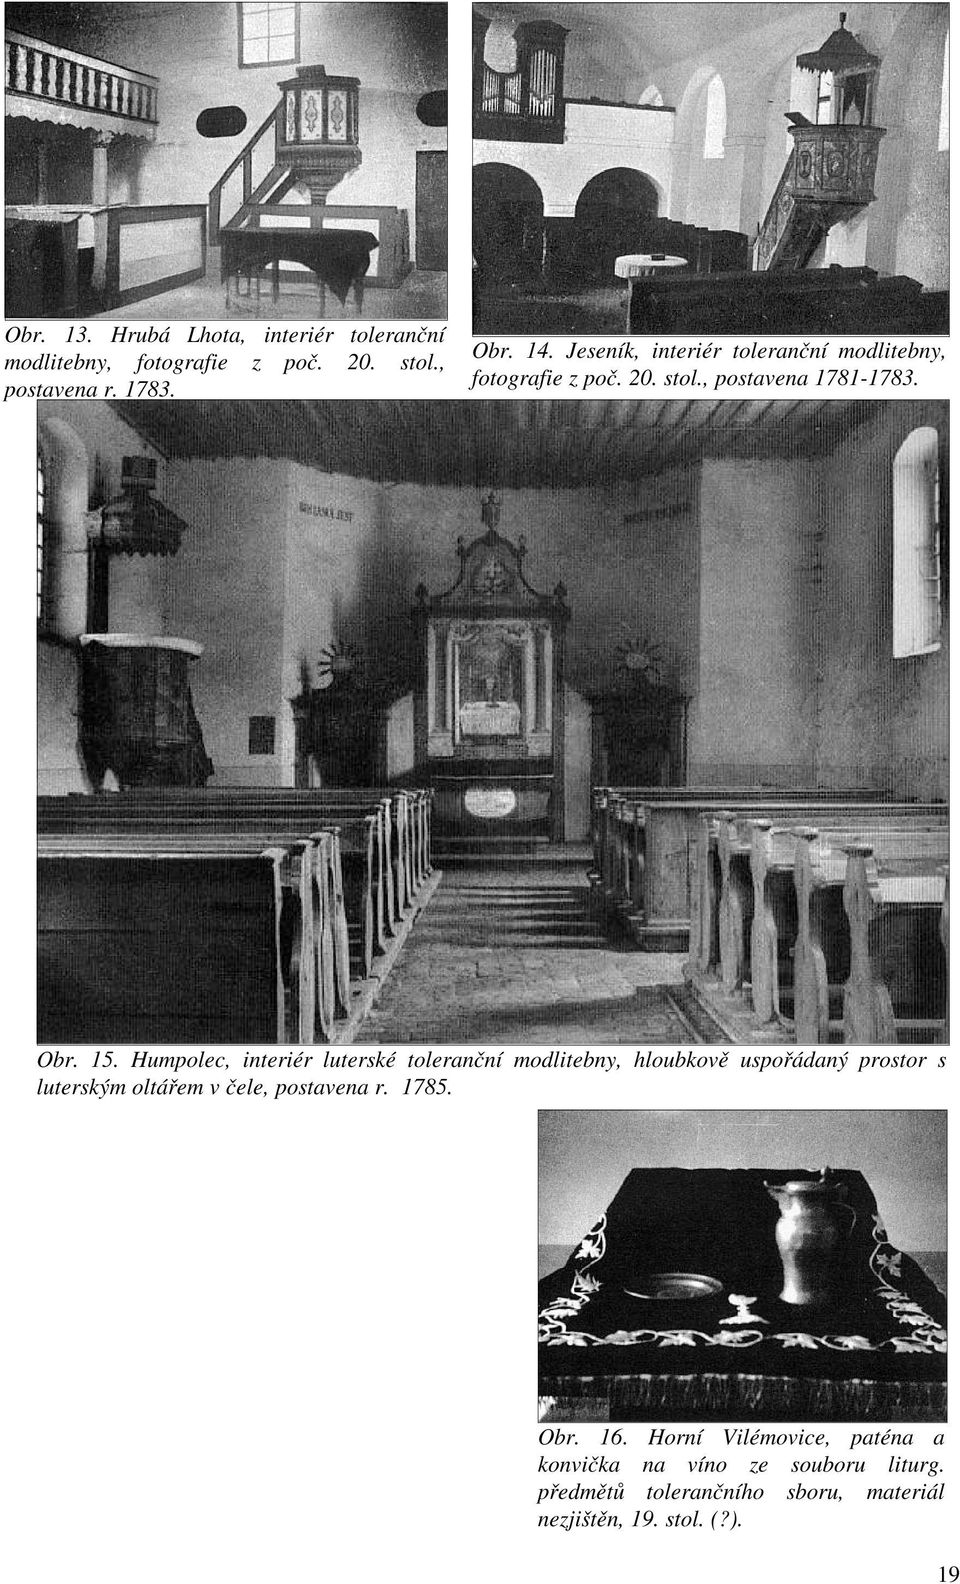 Humpolec, interiér luterské toleranční modlitebny, hloubkově uspořádaný prostor s luterským oltářem v čele, postavena